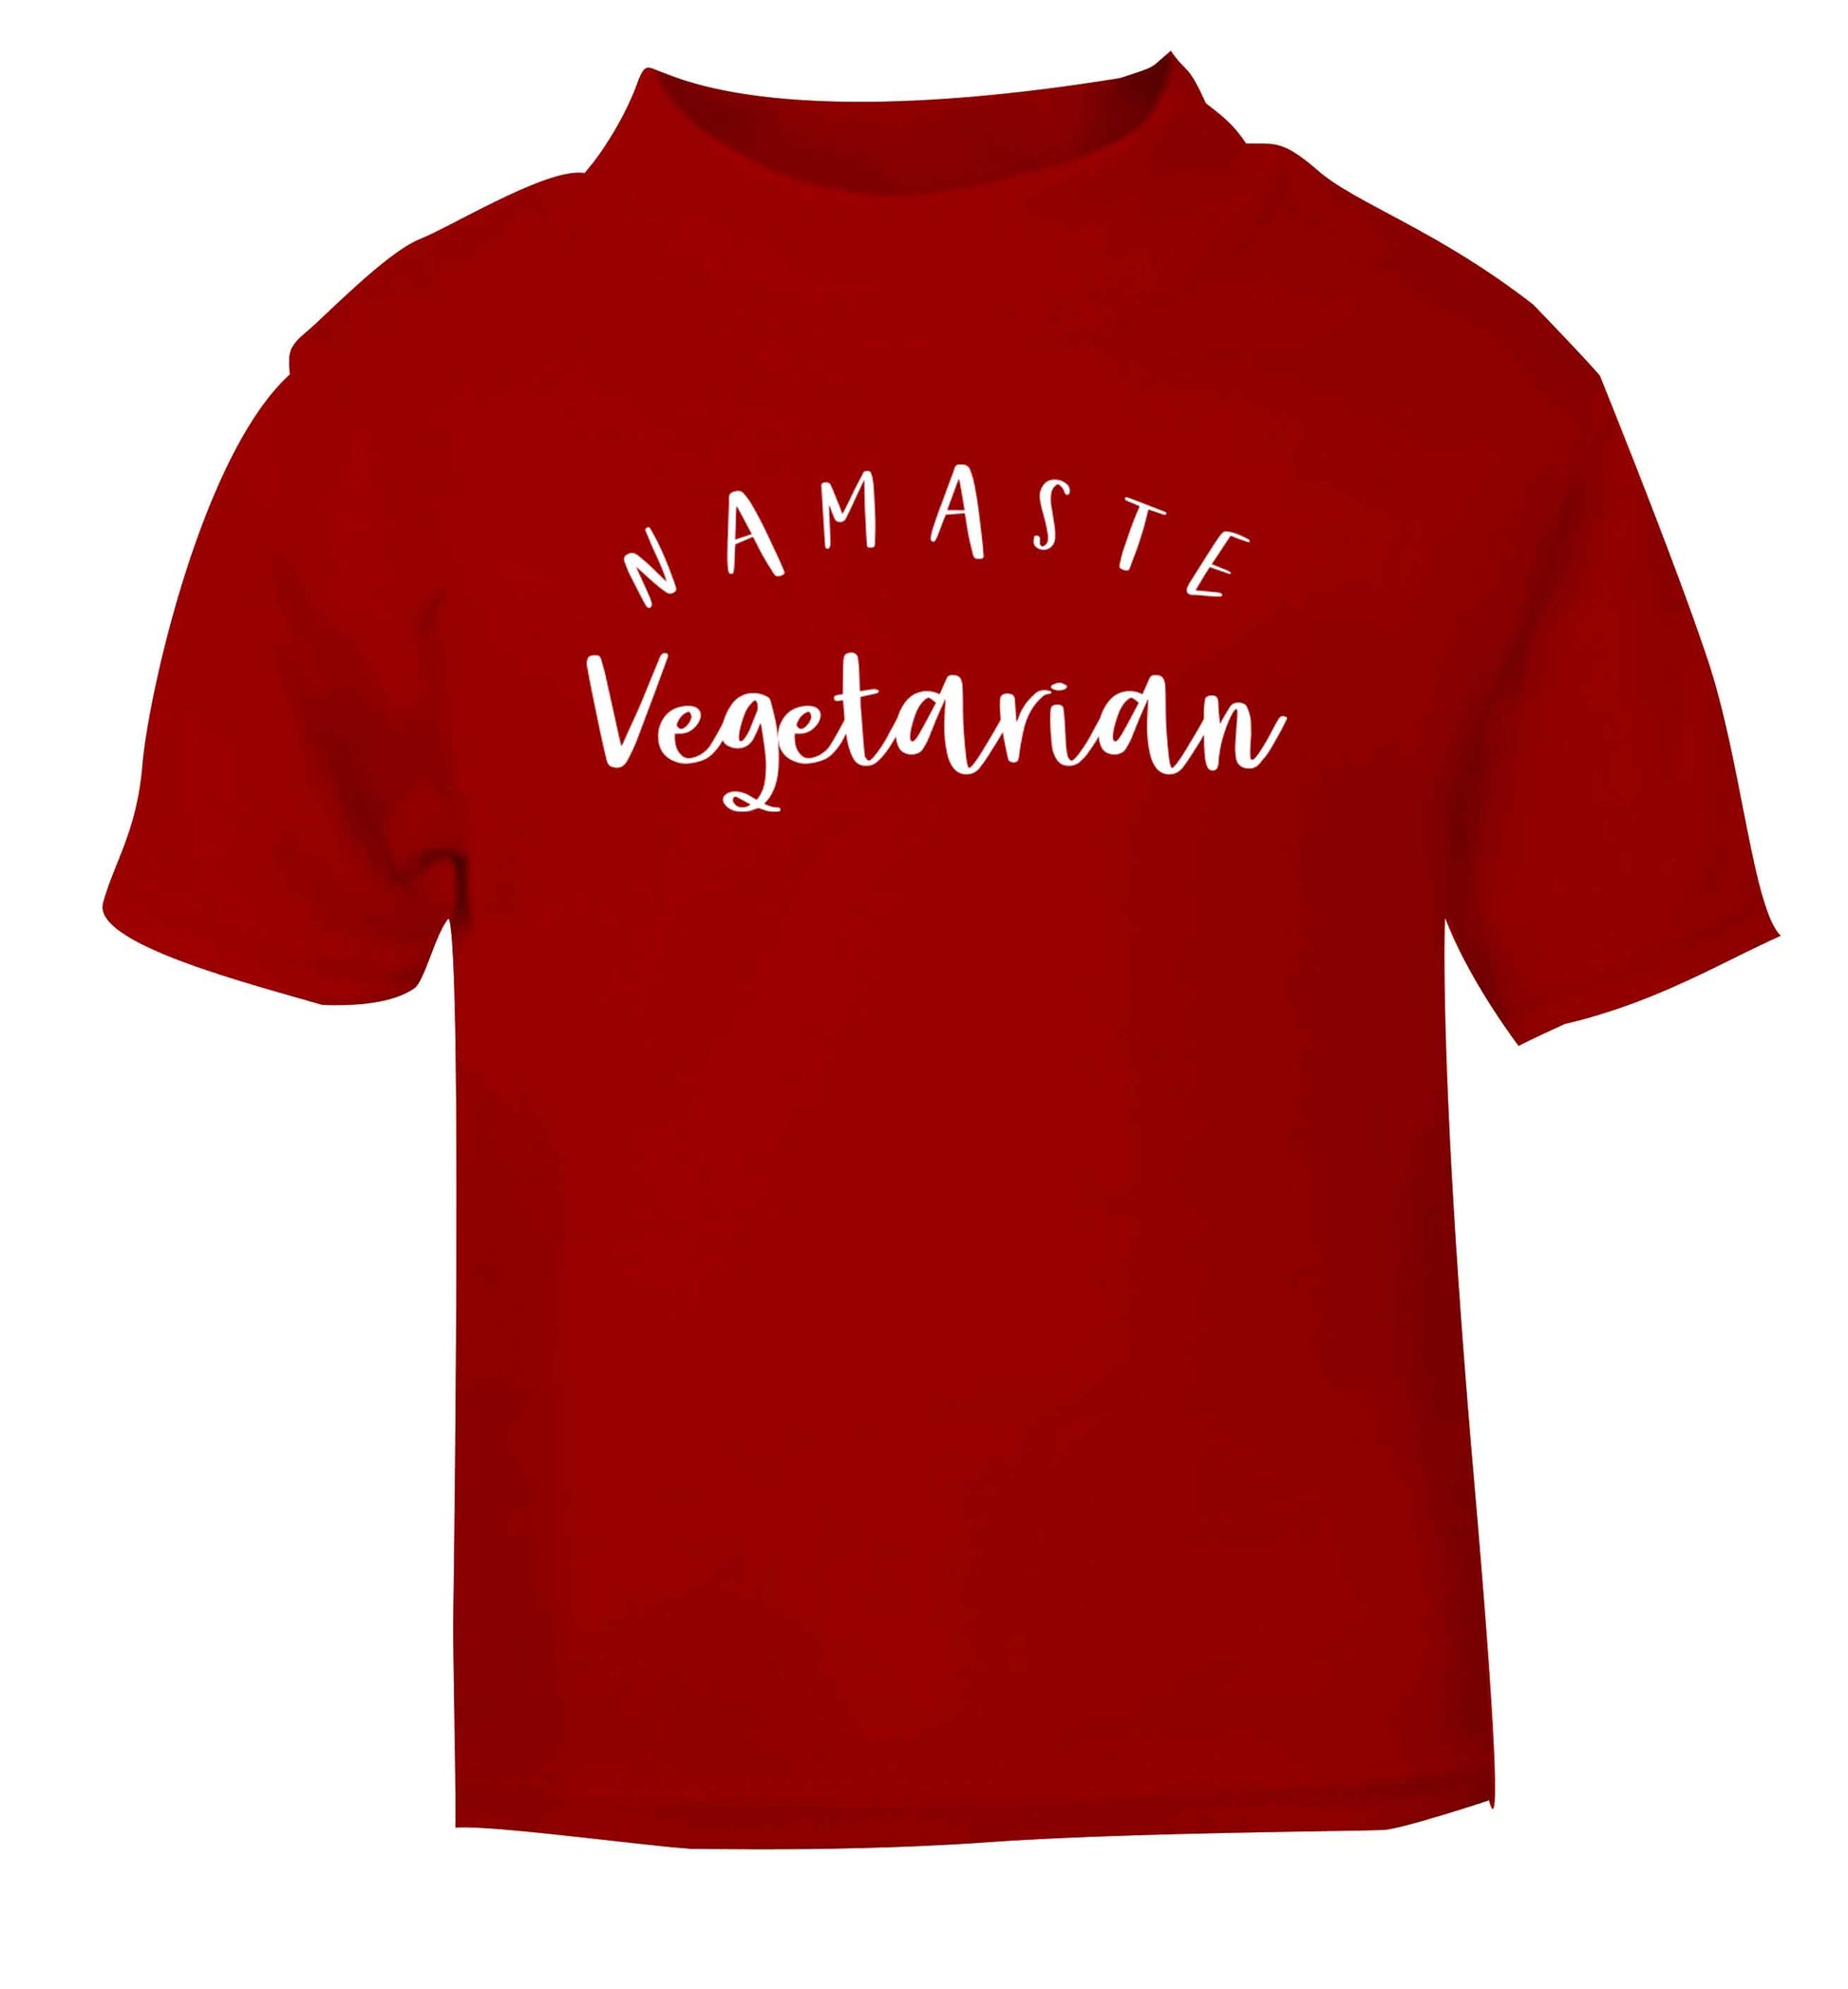 Namaste vegetarian red Baby Toddler Tshirt 2 Years